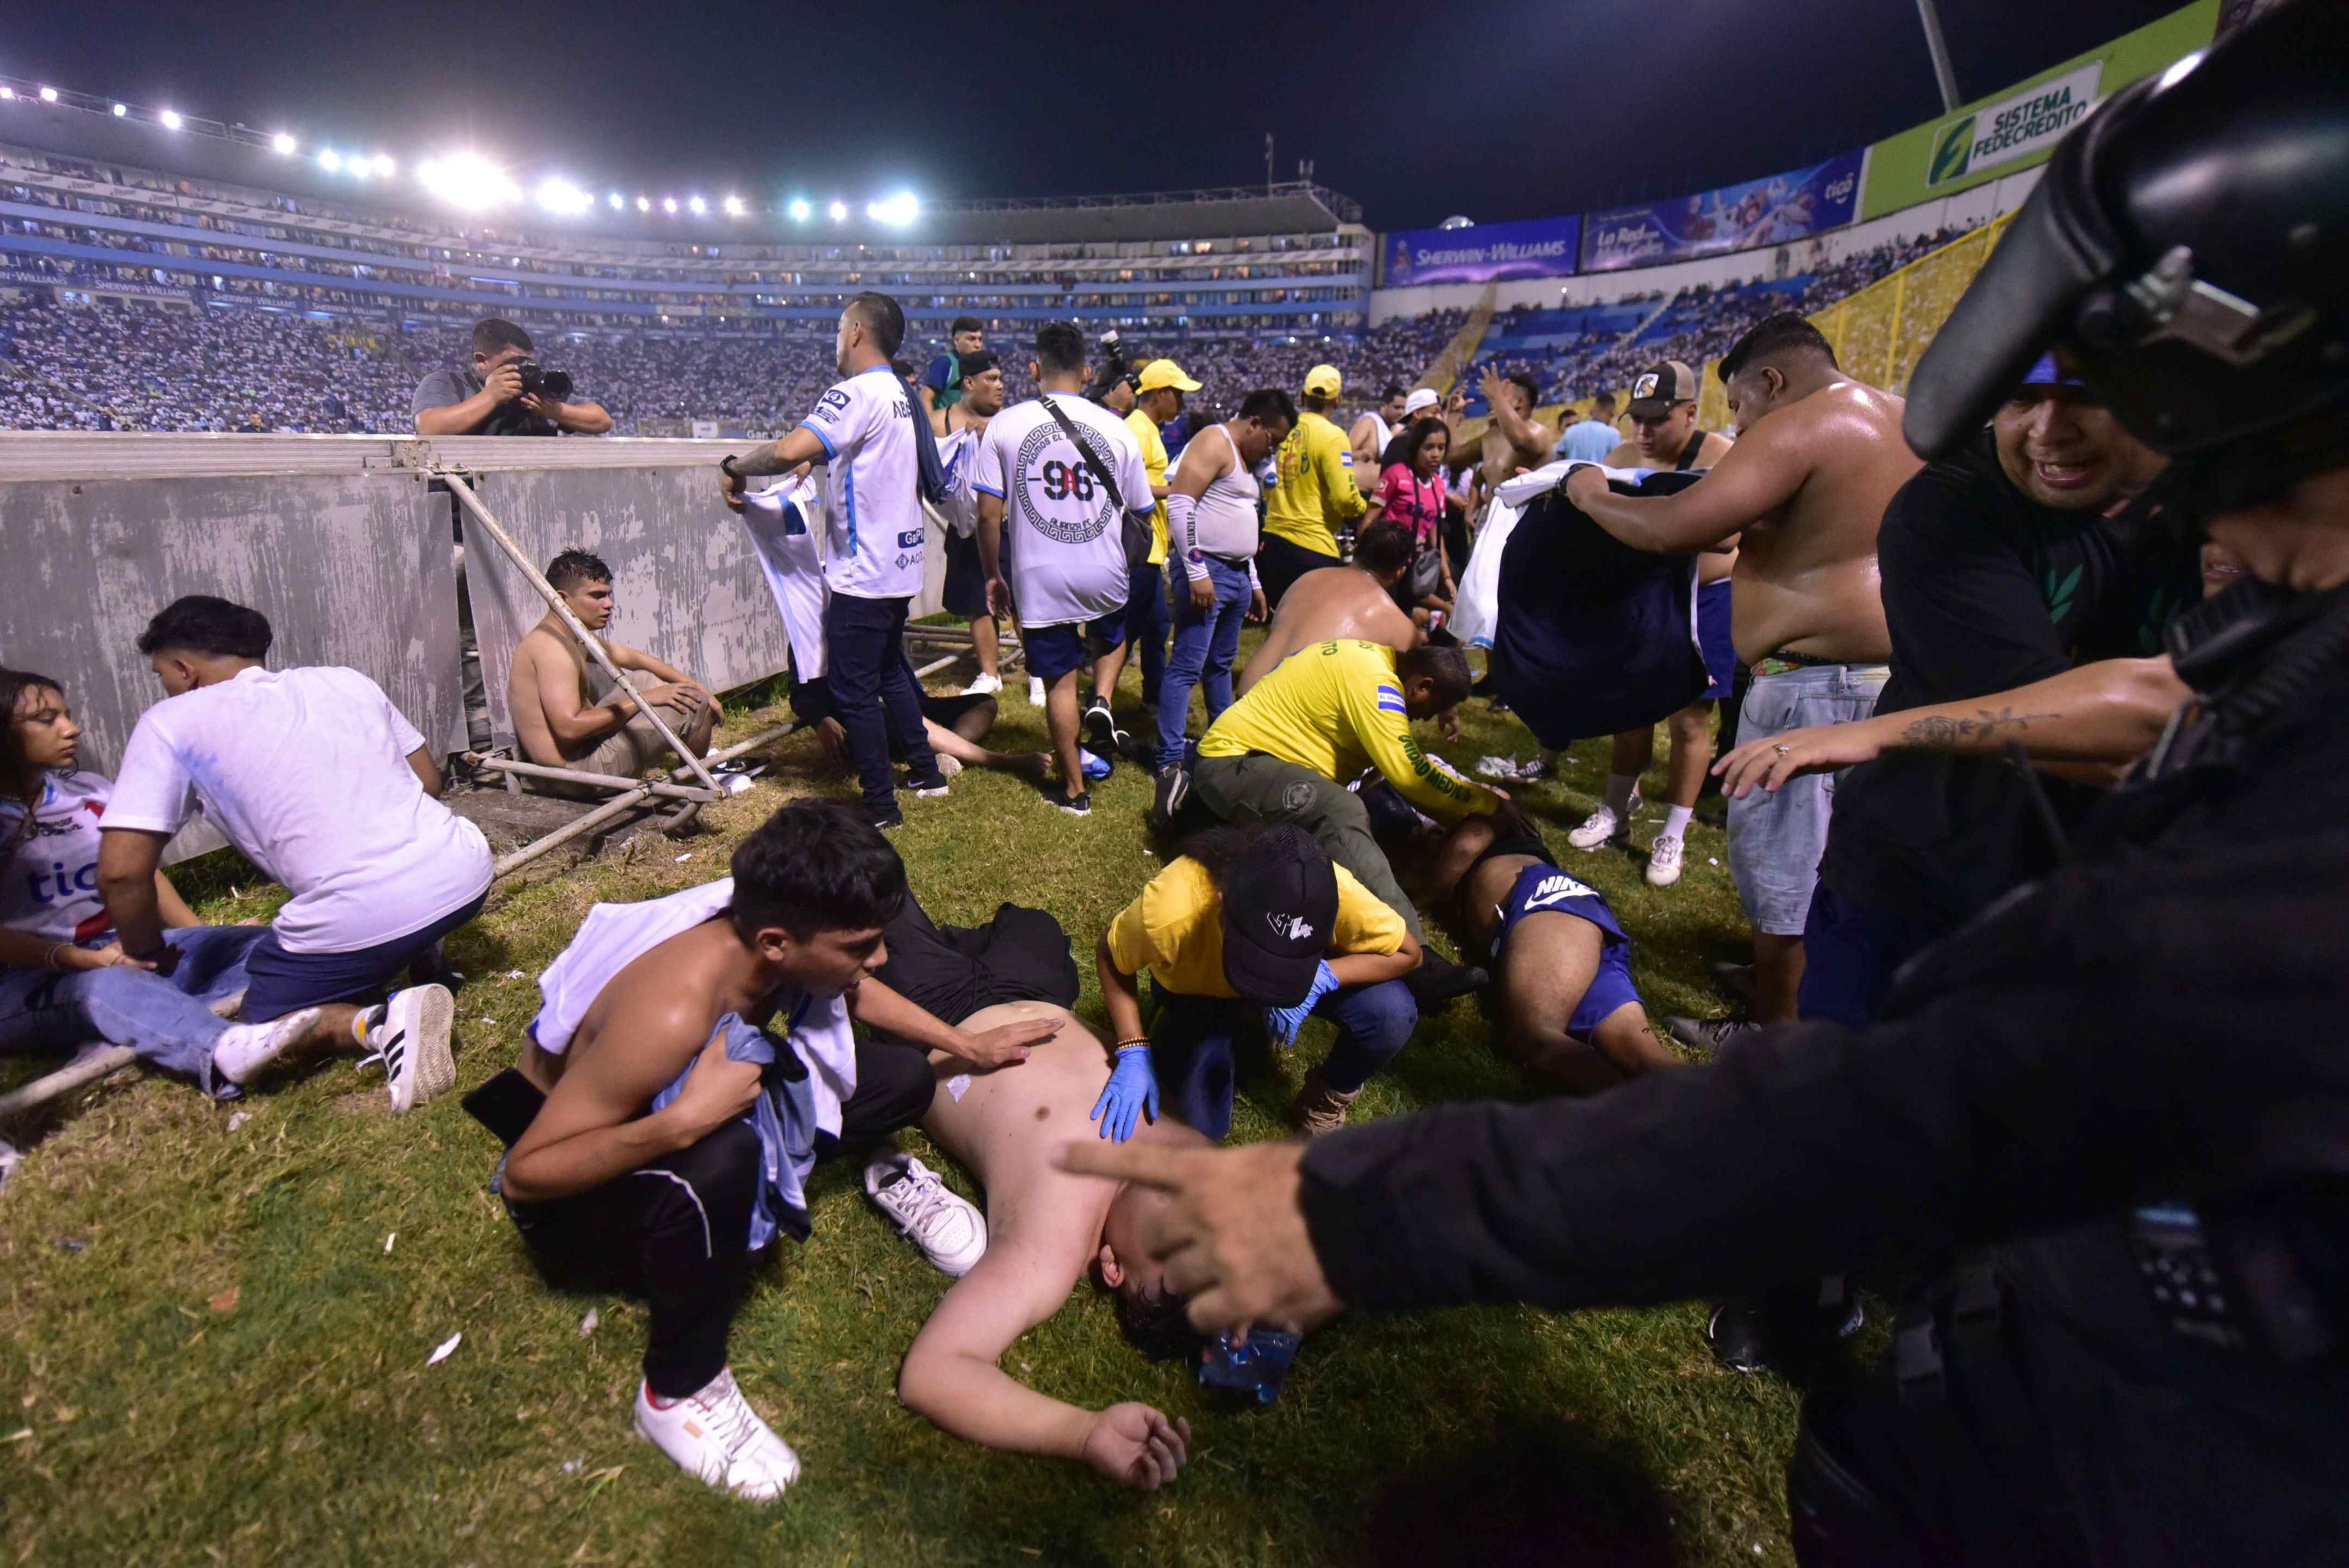 Tragedia in El Salvador: 12 morti nella calca per entrare allo stadio. Le immagini